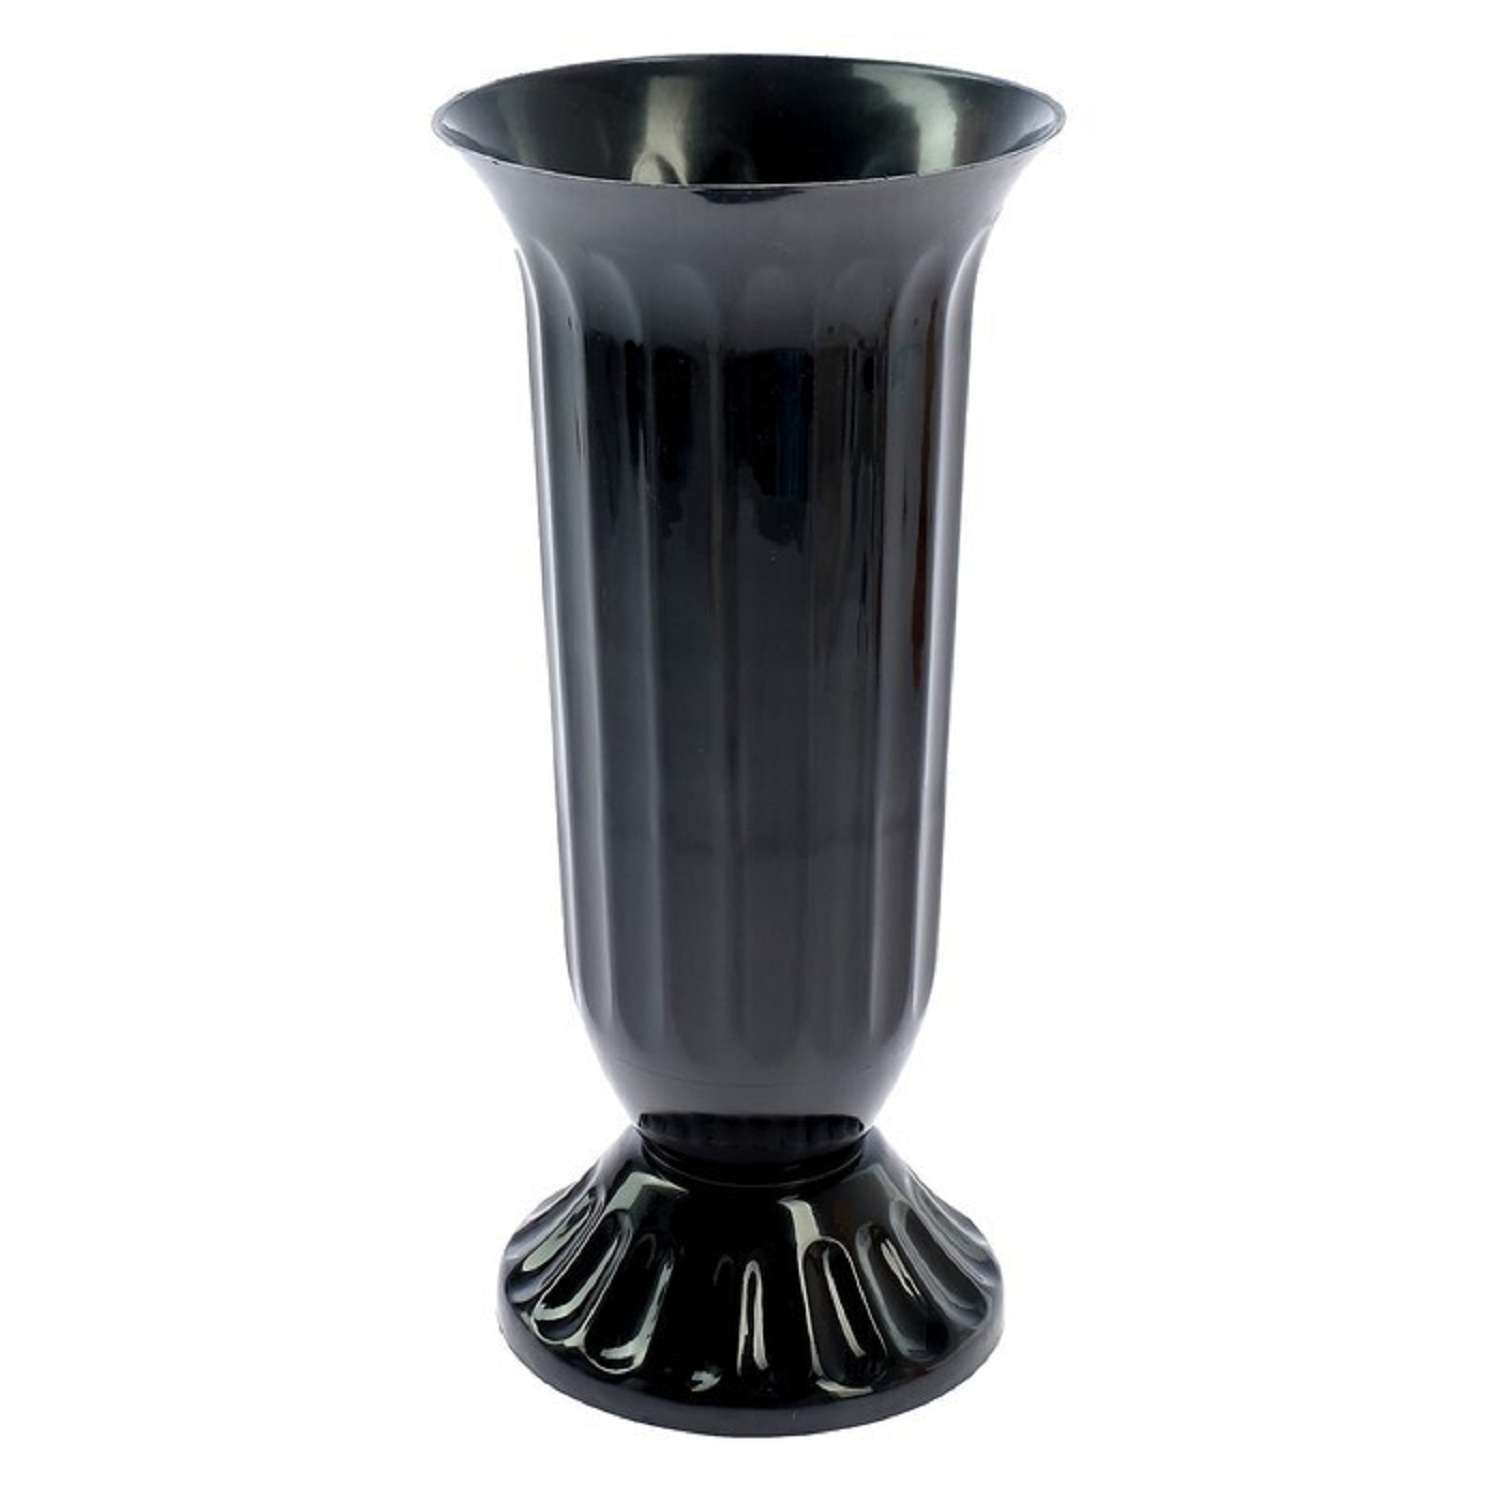 Ваза пластиковая для цветов черная купить. Ваза 3004 Цветочная №4 17 л. Пластиковые вазы. Пластиковые вазы для цветов. Вазы для кладбища пластиковые.